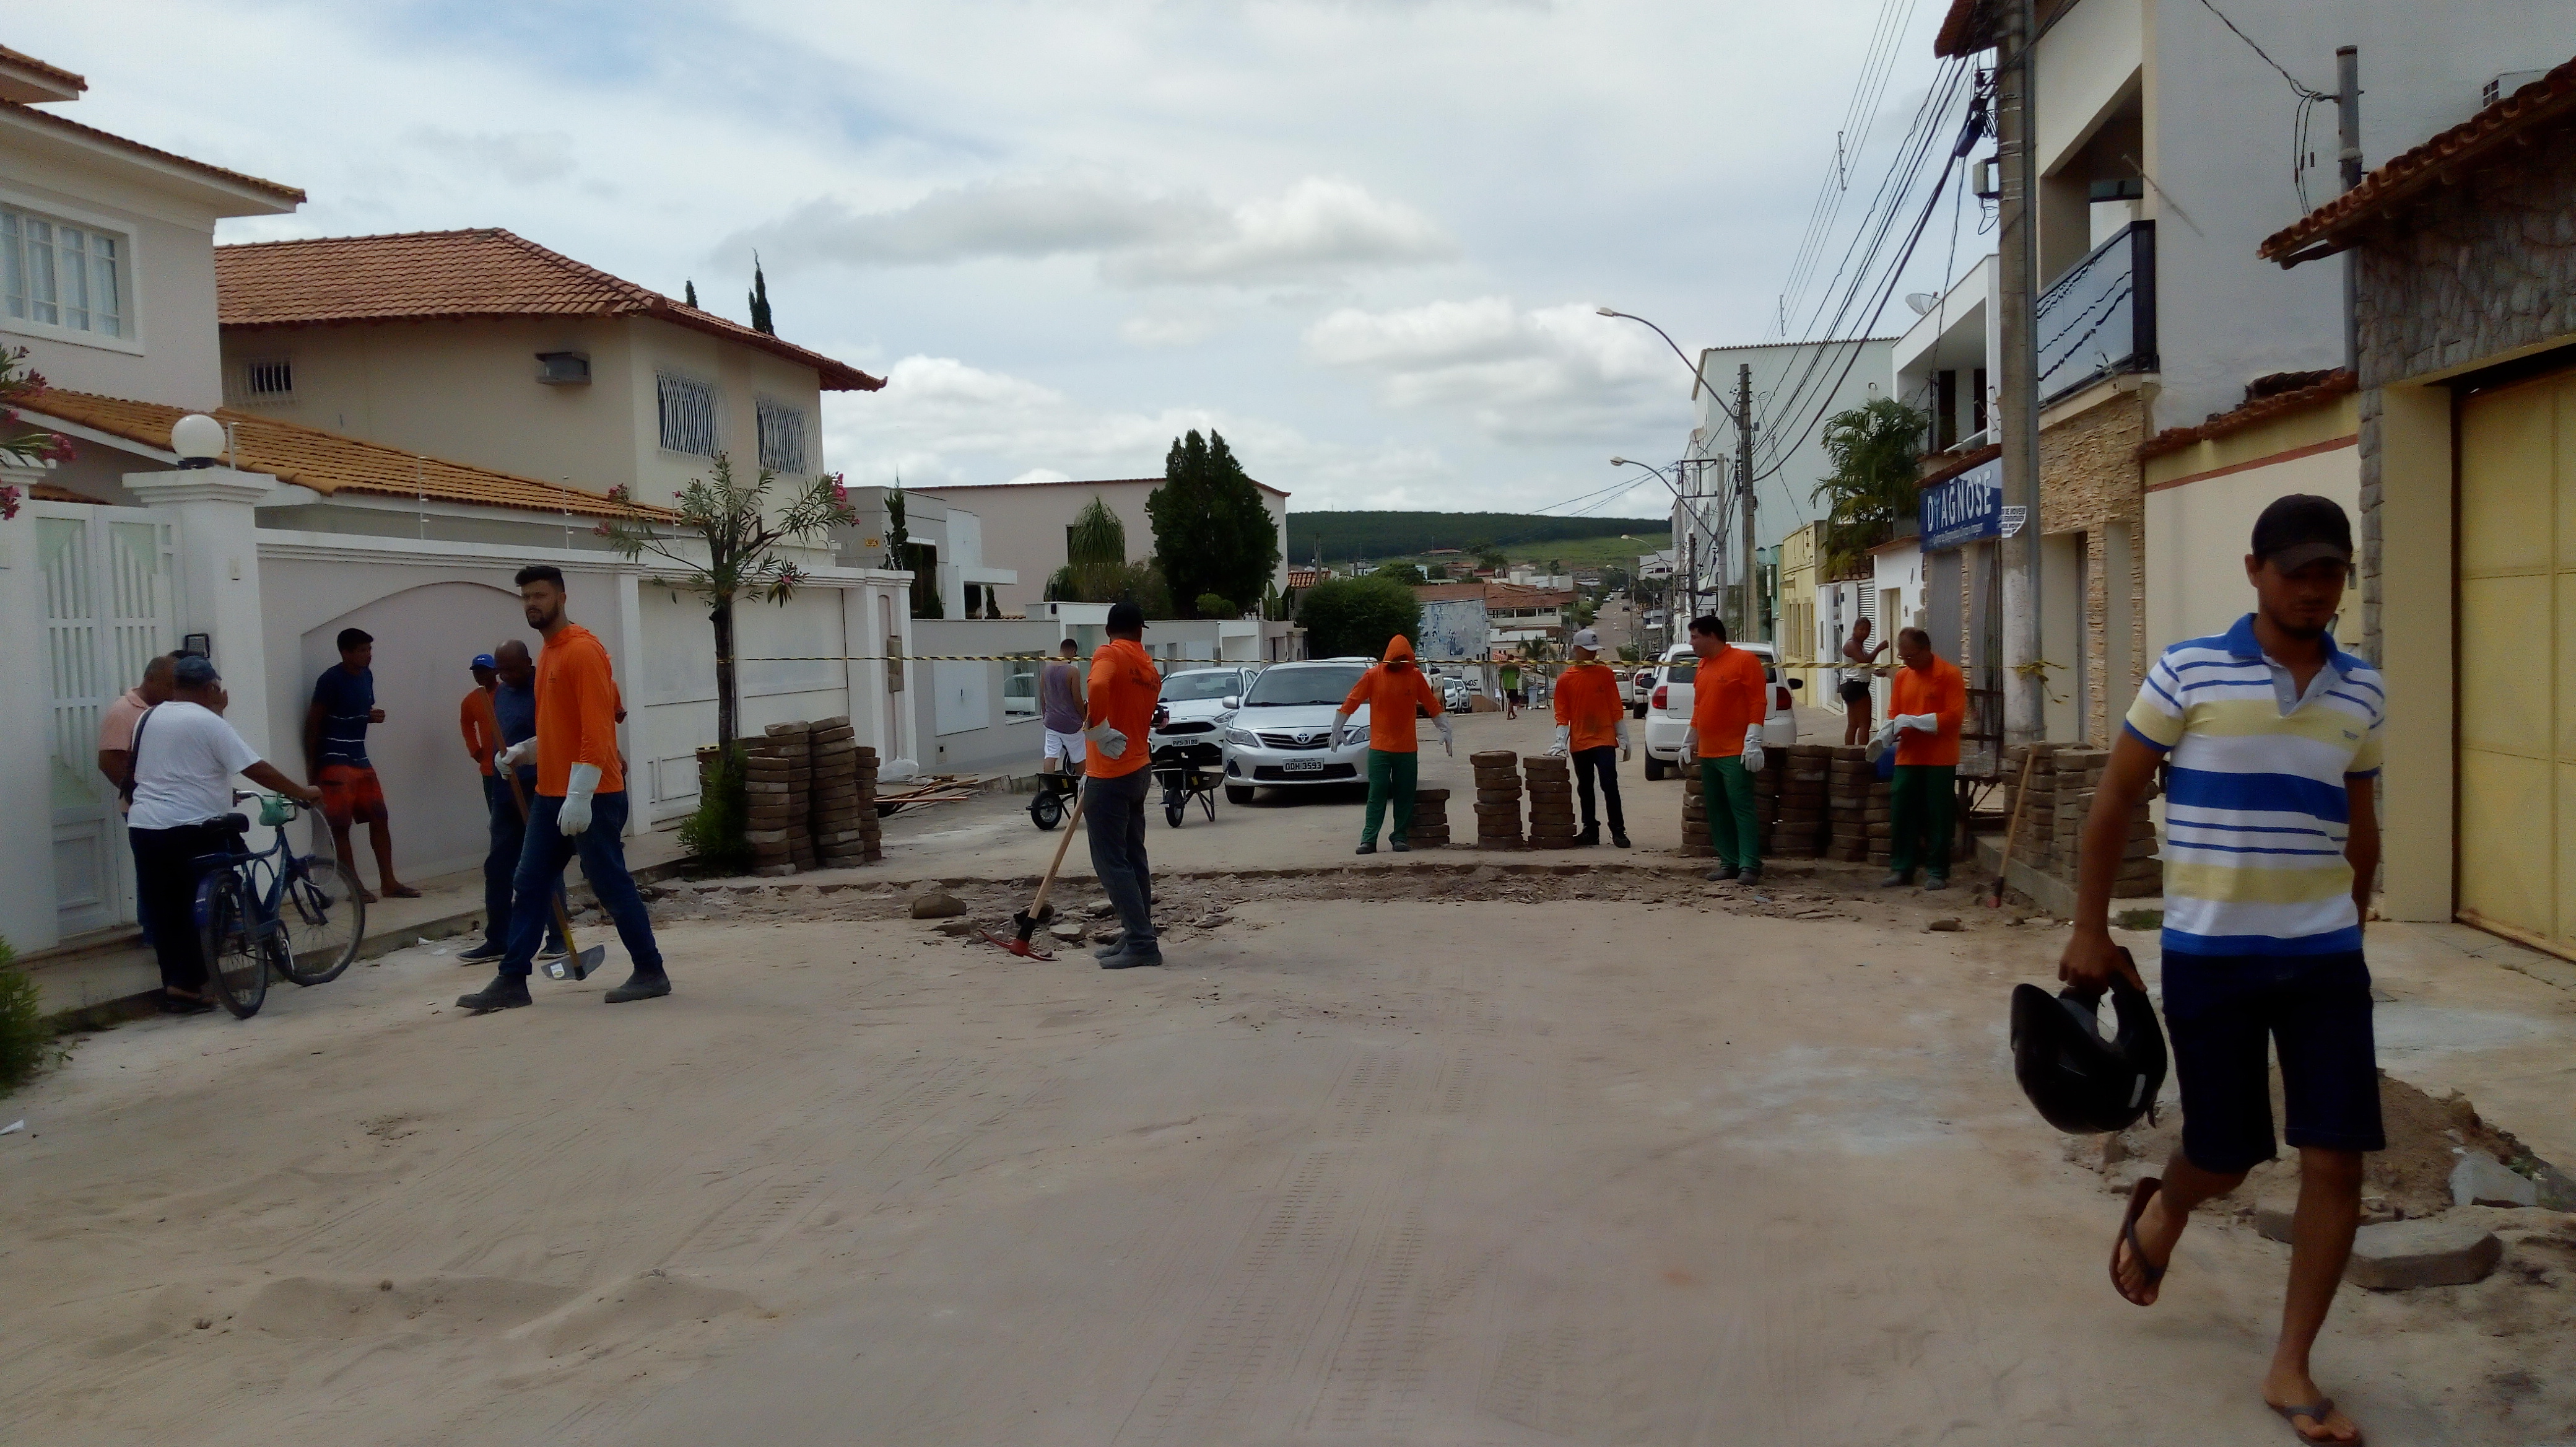 Segunda etapa da “Operação Tapa Buracos” começa em Pinheiros